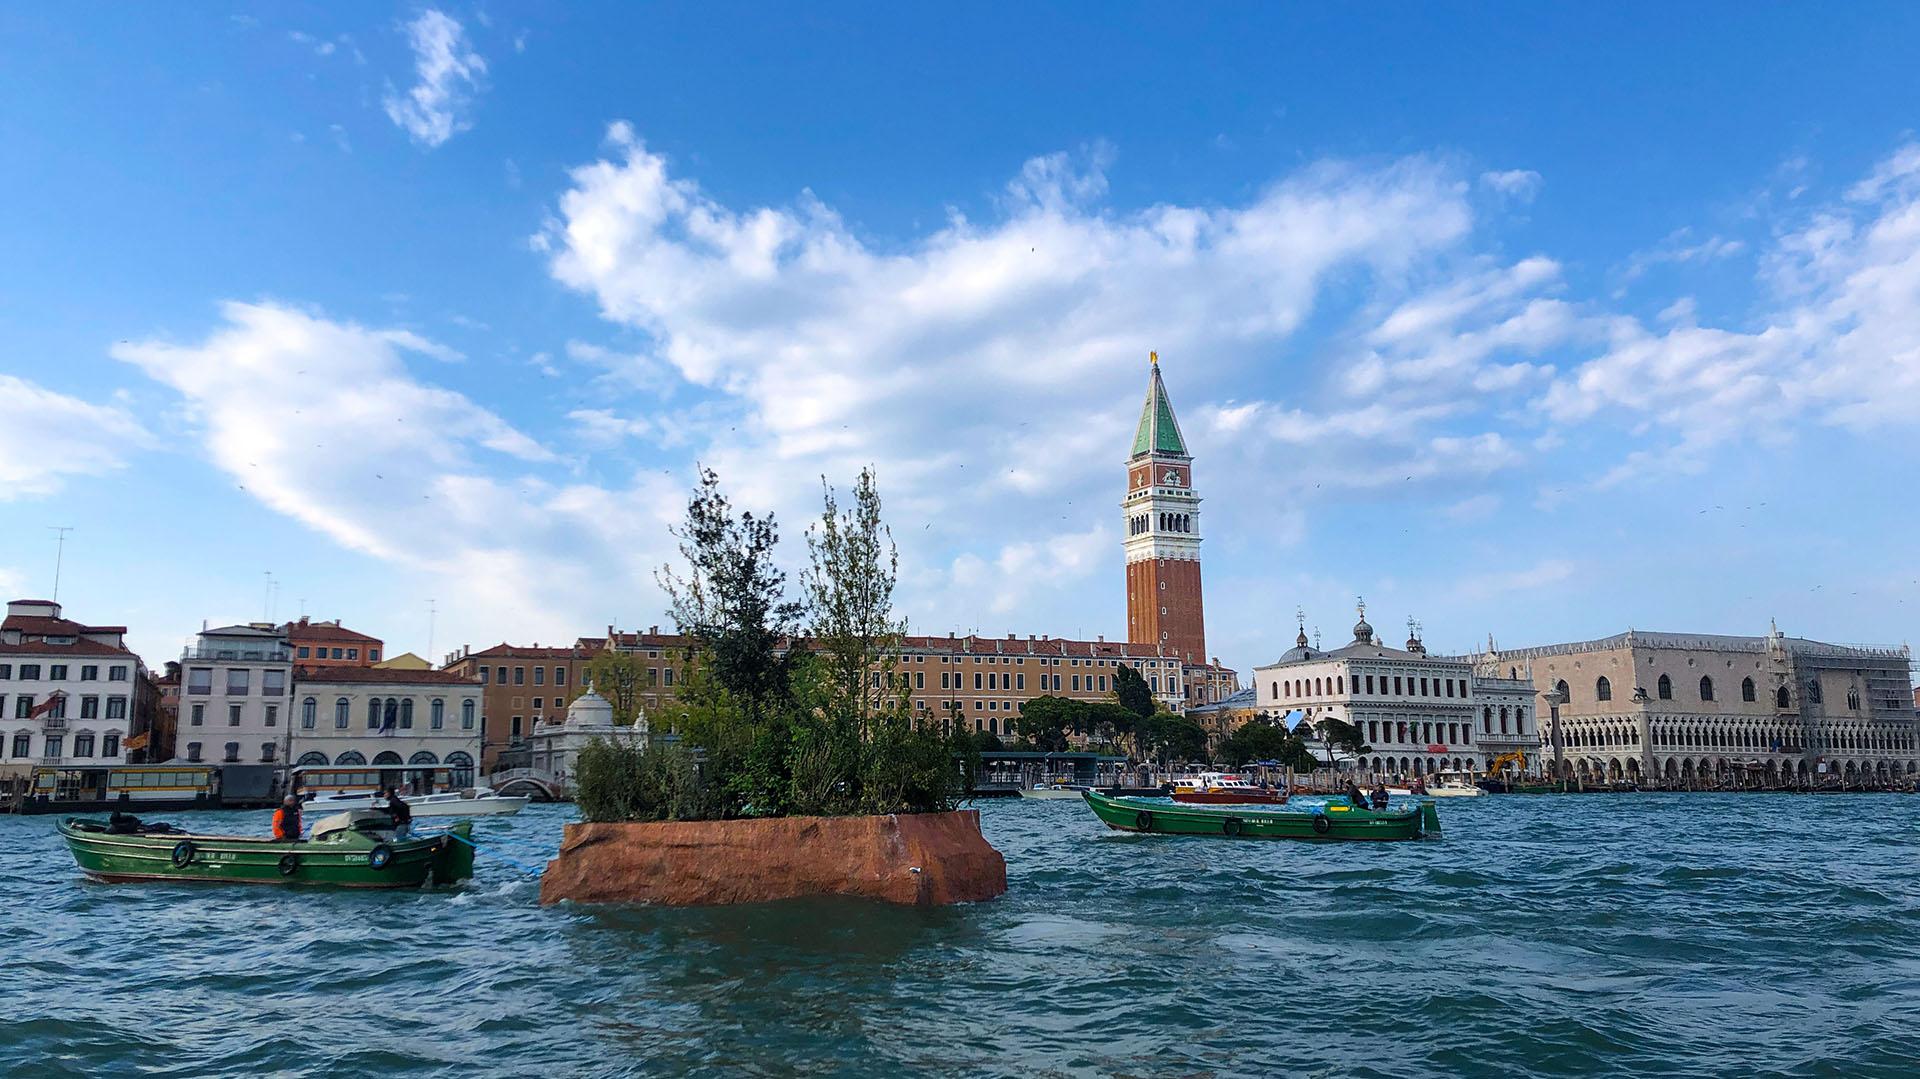  Galla, una escultura que navega el Gran Canal de Venecia